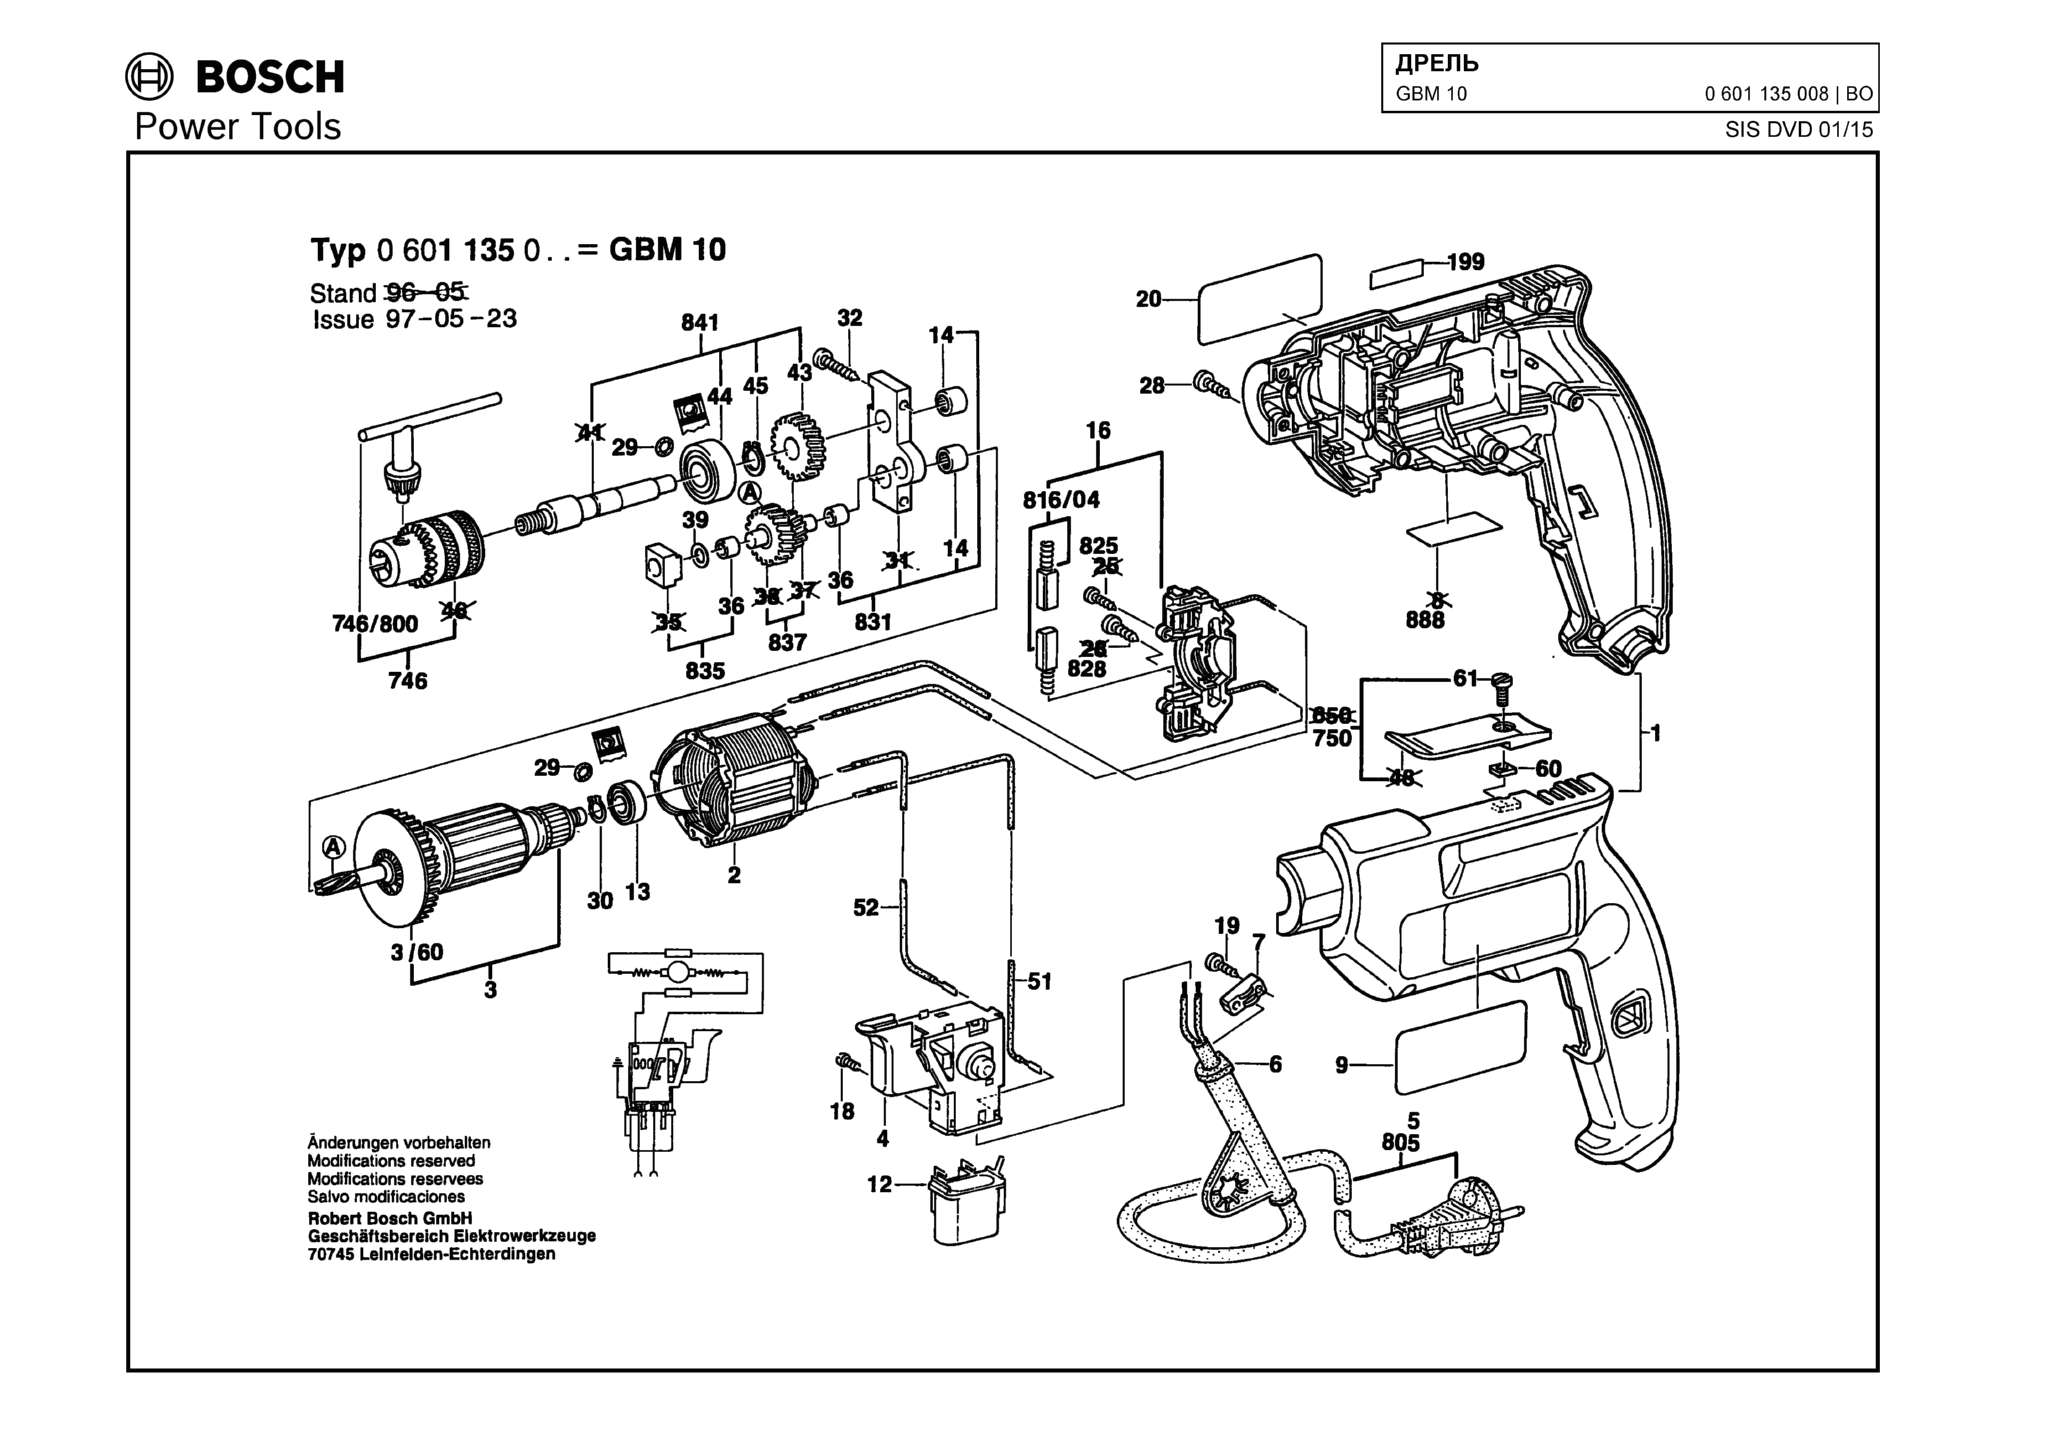 Запчасти, схема и деталировка Bosch GBM 10 (ТИП 0601135008)